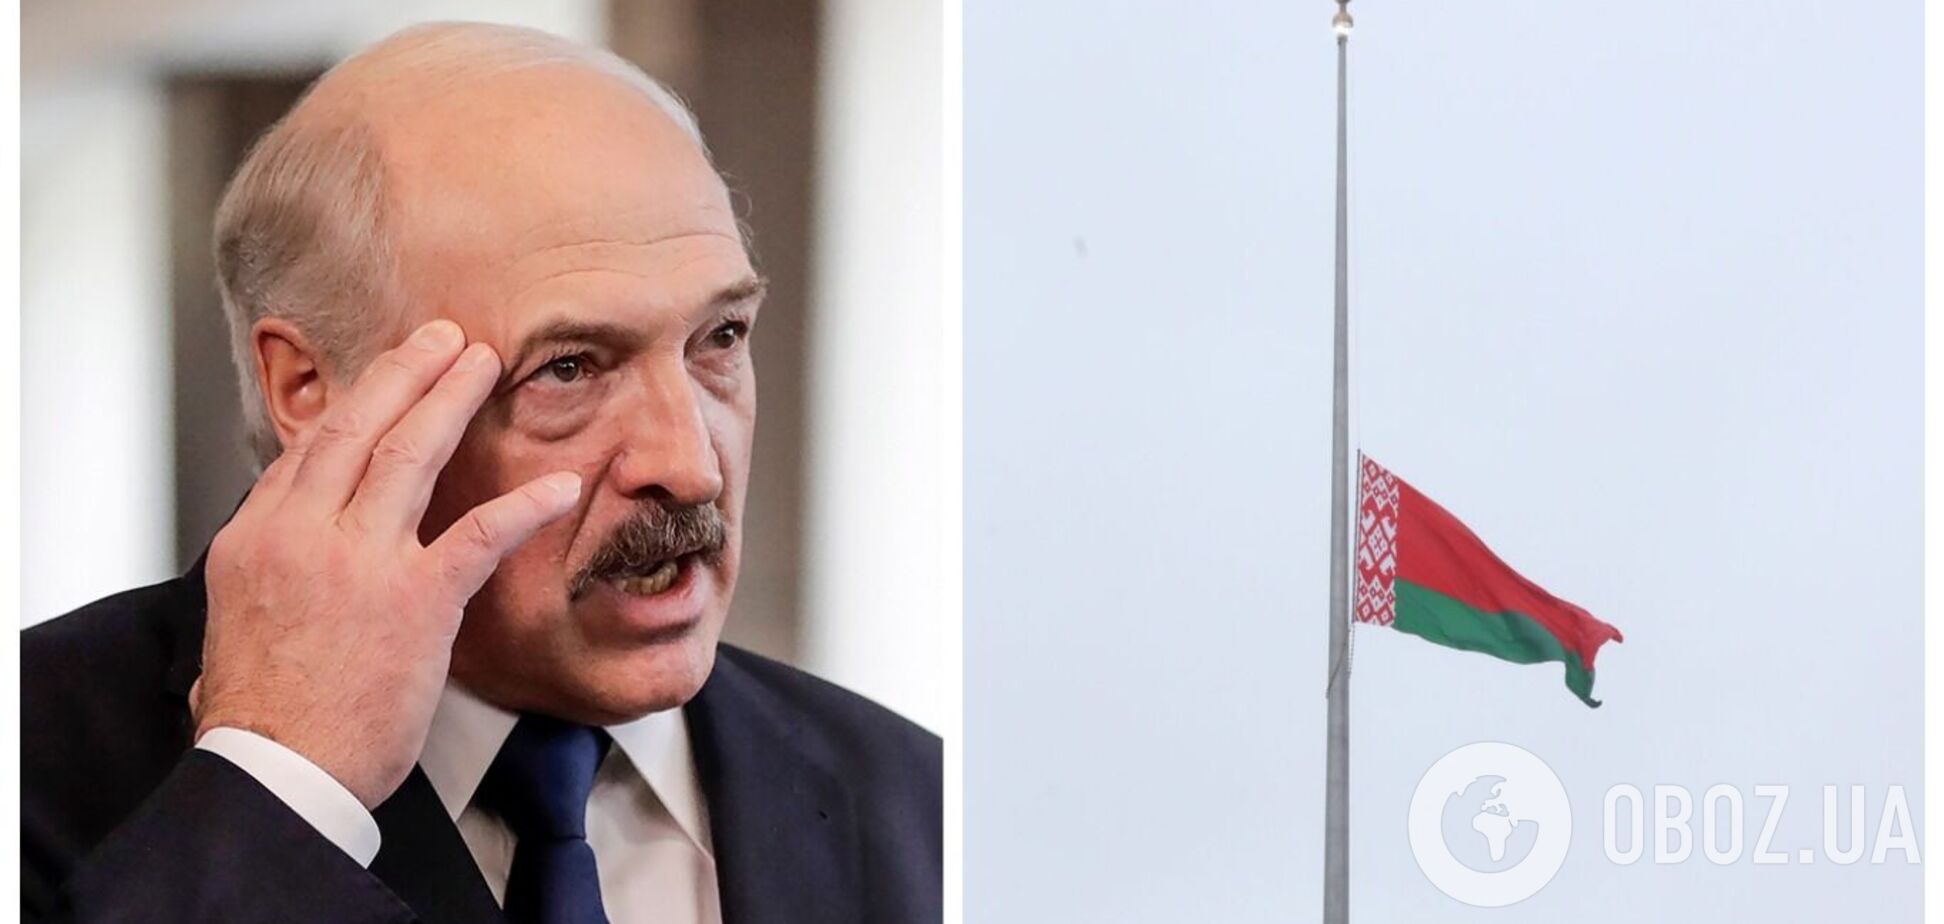 В Беларуси оппозиция назвала возможный диагноз Лукашенко: в Кремле его состояние не комментируют